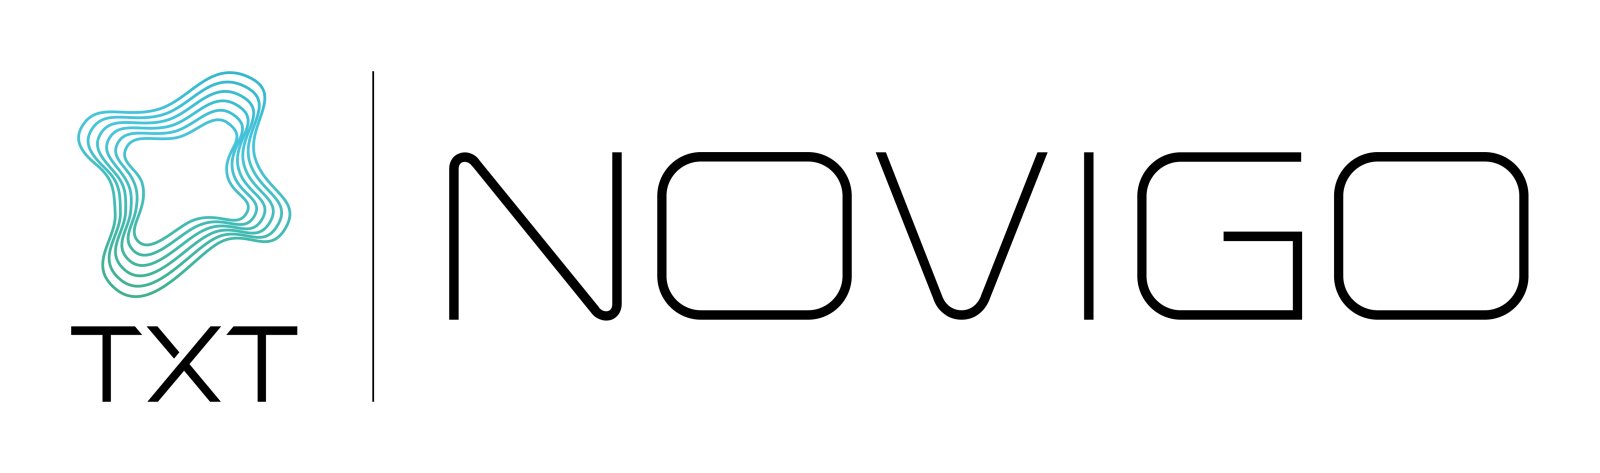 Logo TXT NOVIGO